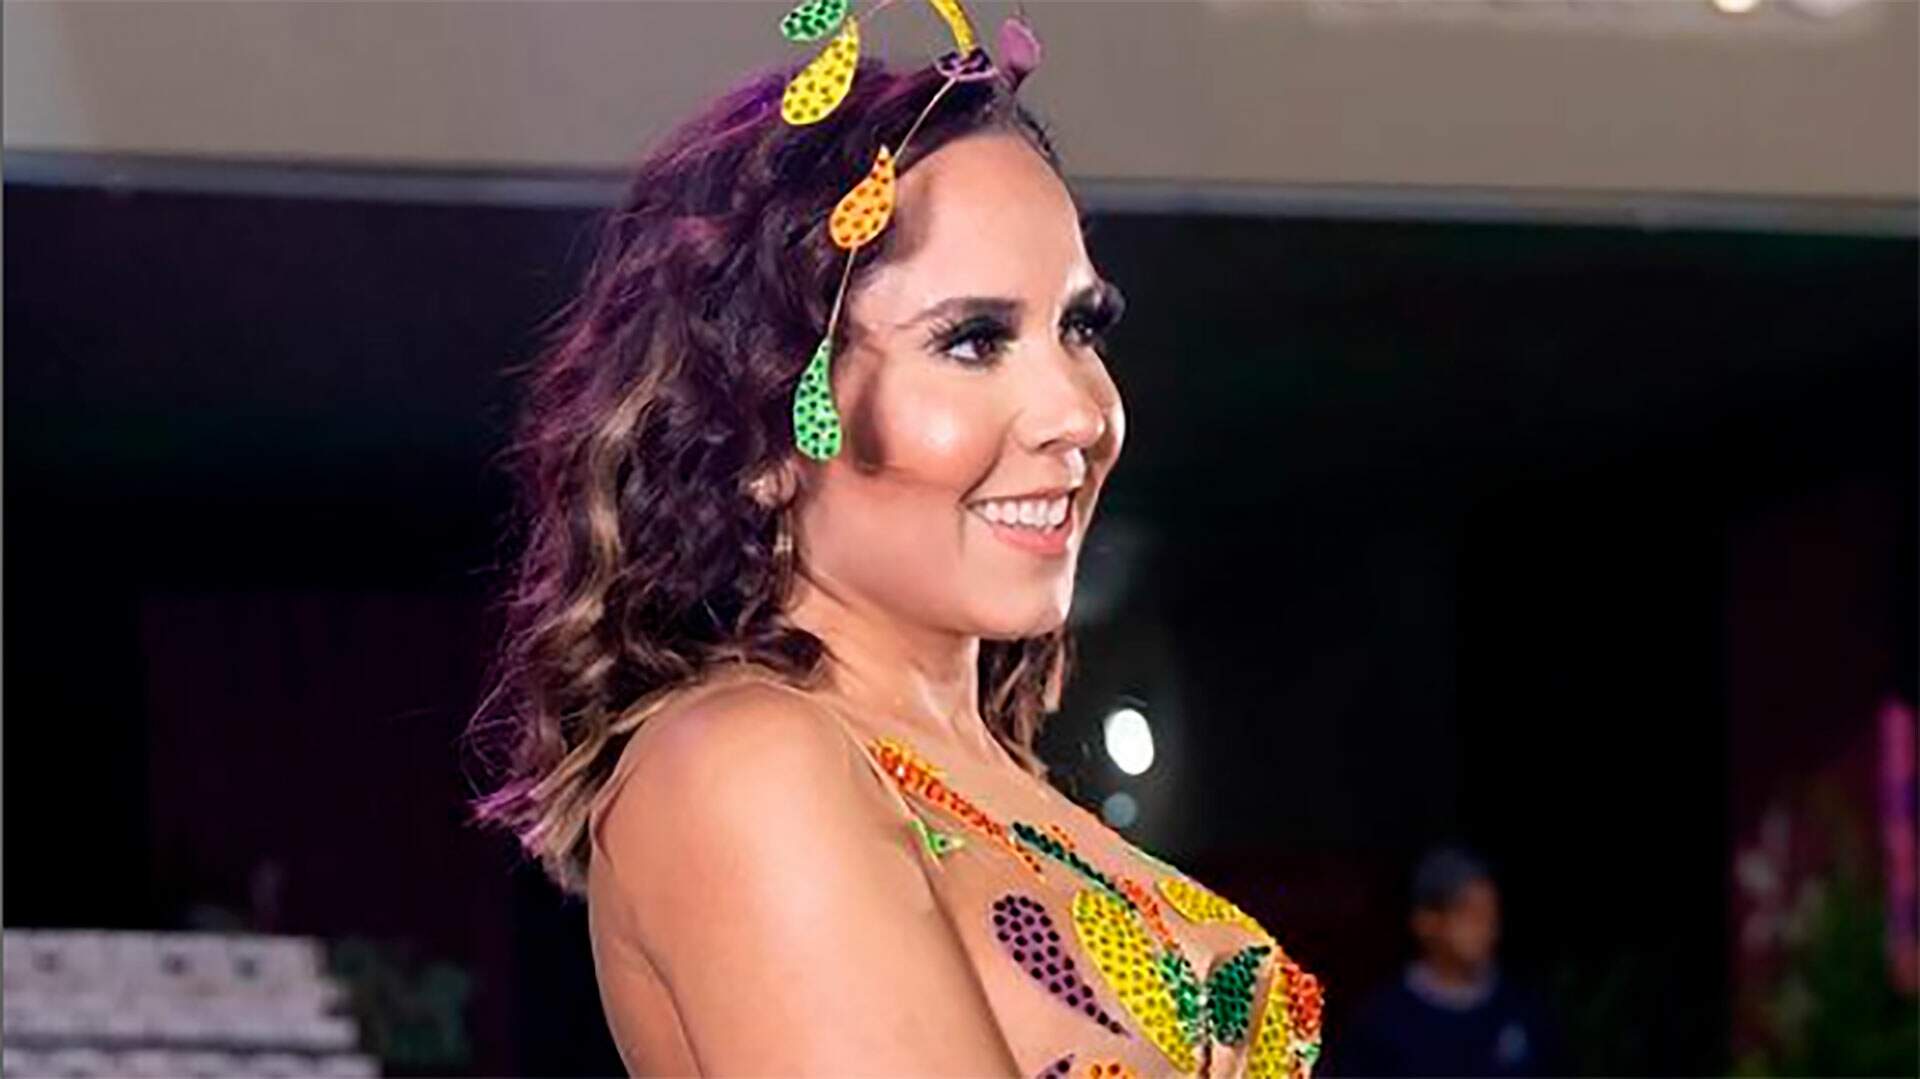 Mulher Melão aposta em roupa luxuosa e inusitada para o Carnaval: “Pronta” - Metropolitana FM